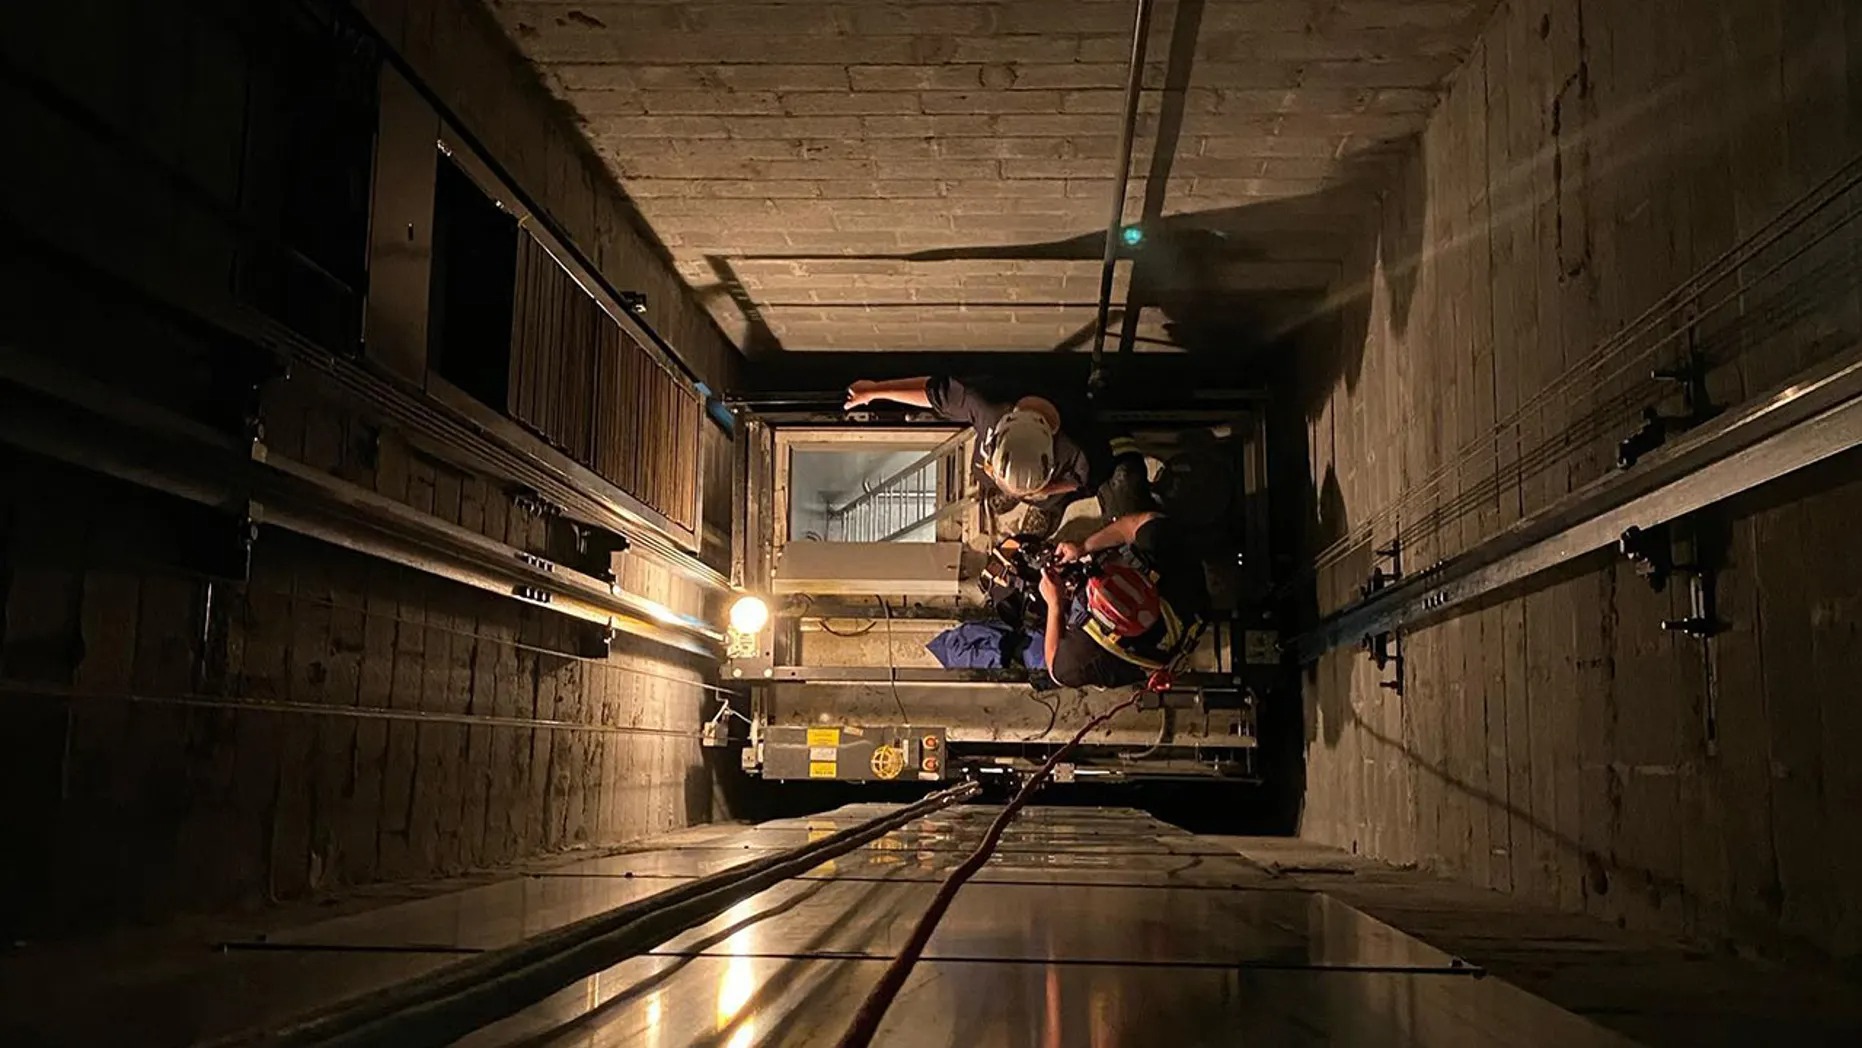 Bomberos de Nueva Jersey descienden en rapel por el hueco de un ascensor para rescatar a seis niños atrapados